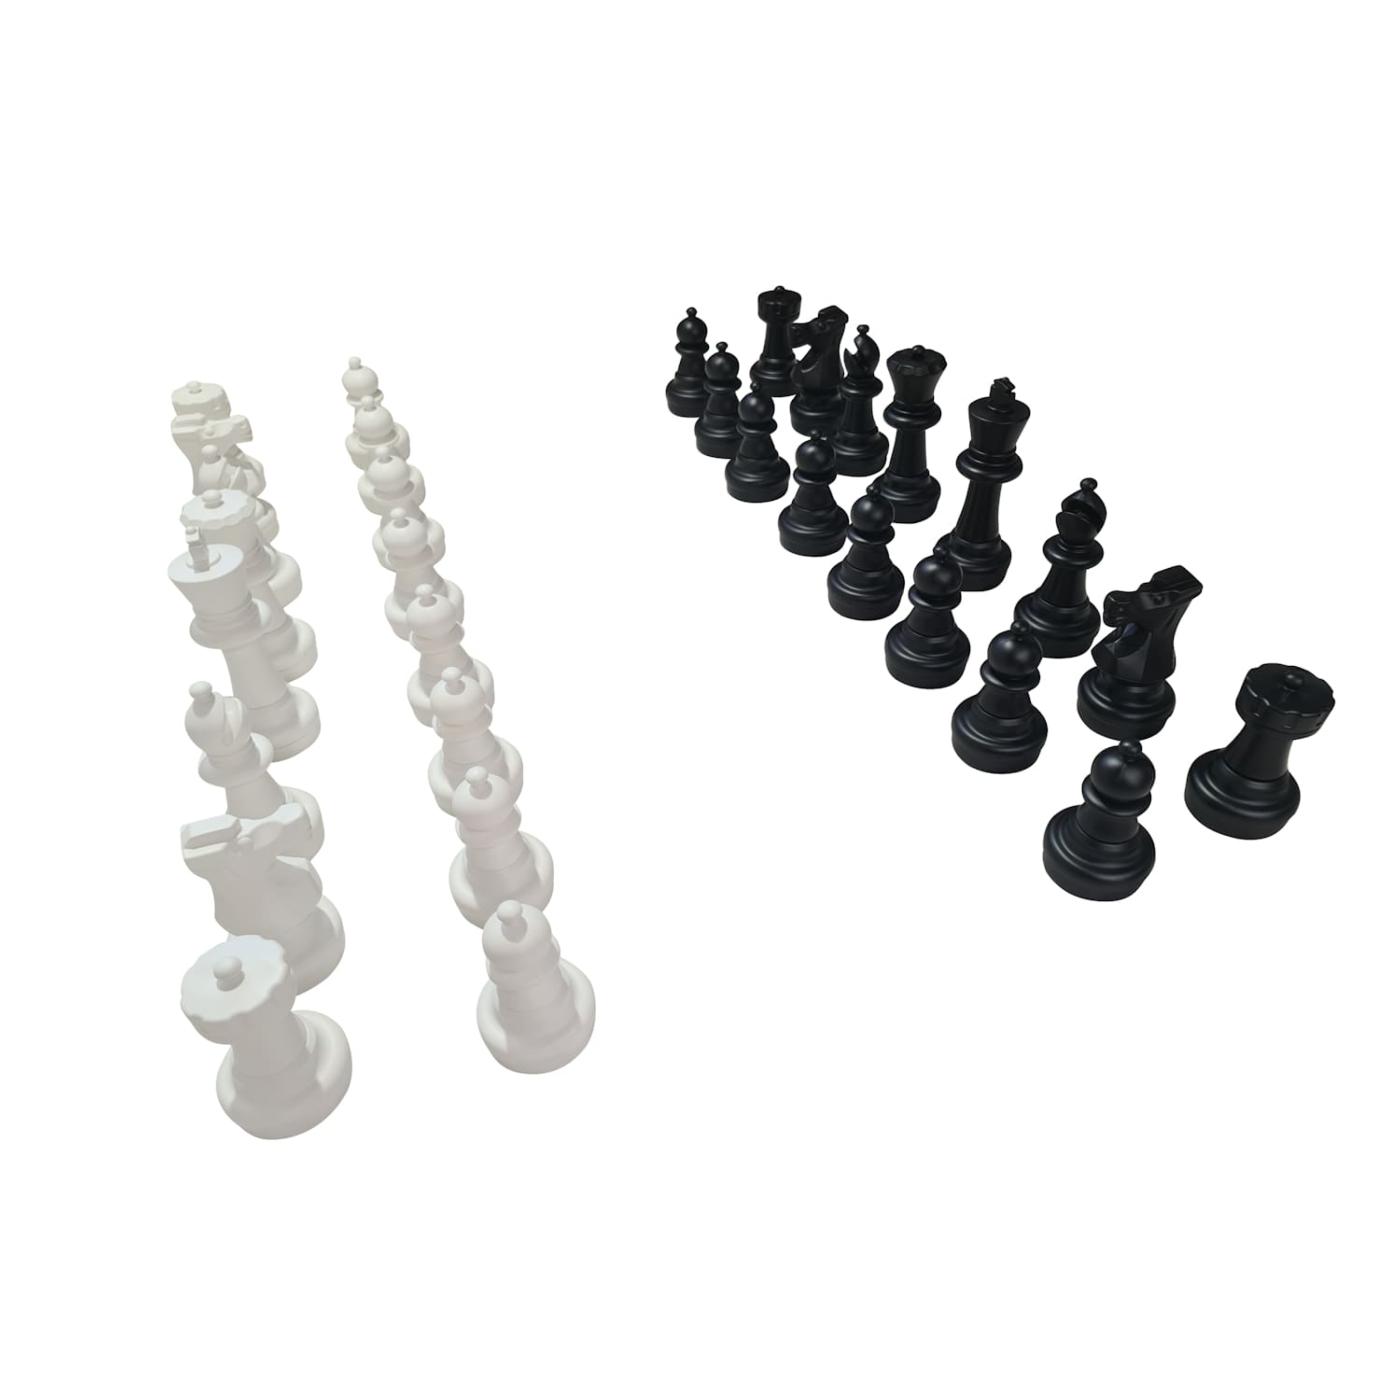 Tabuleiro de xadrez ao ar livre com grandes peças de plástico